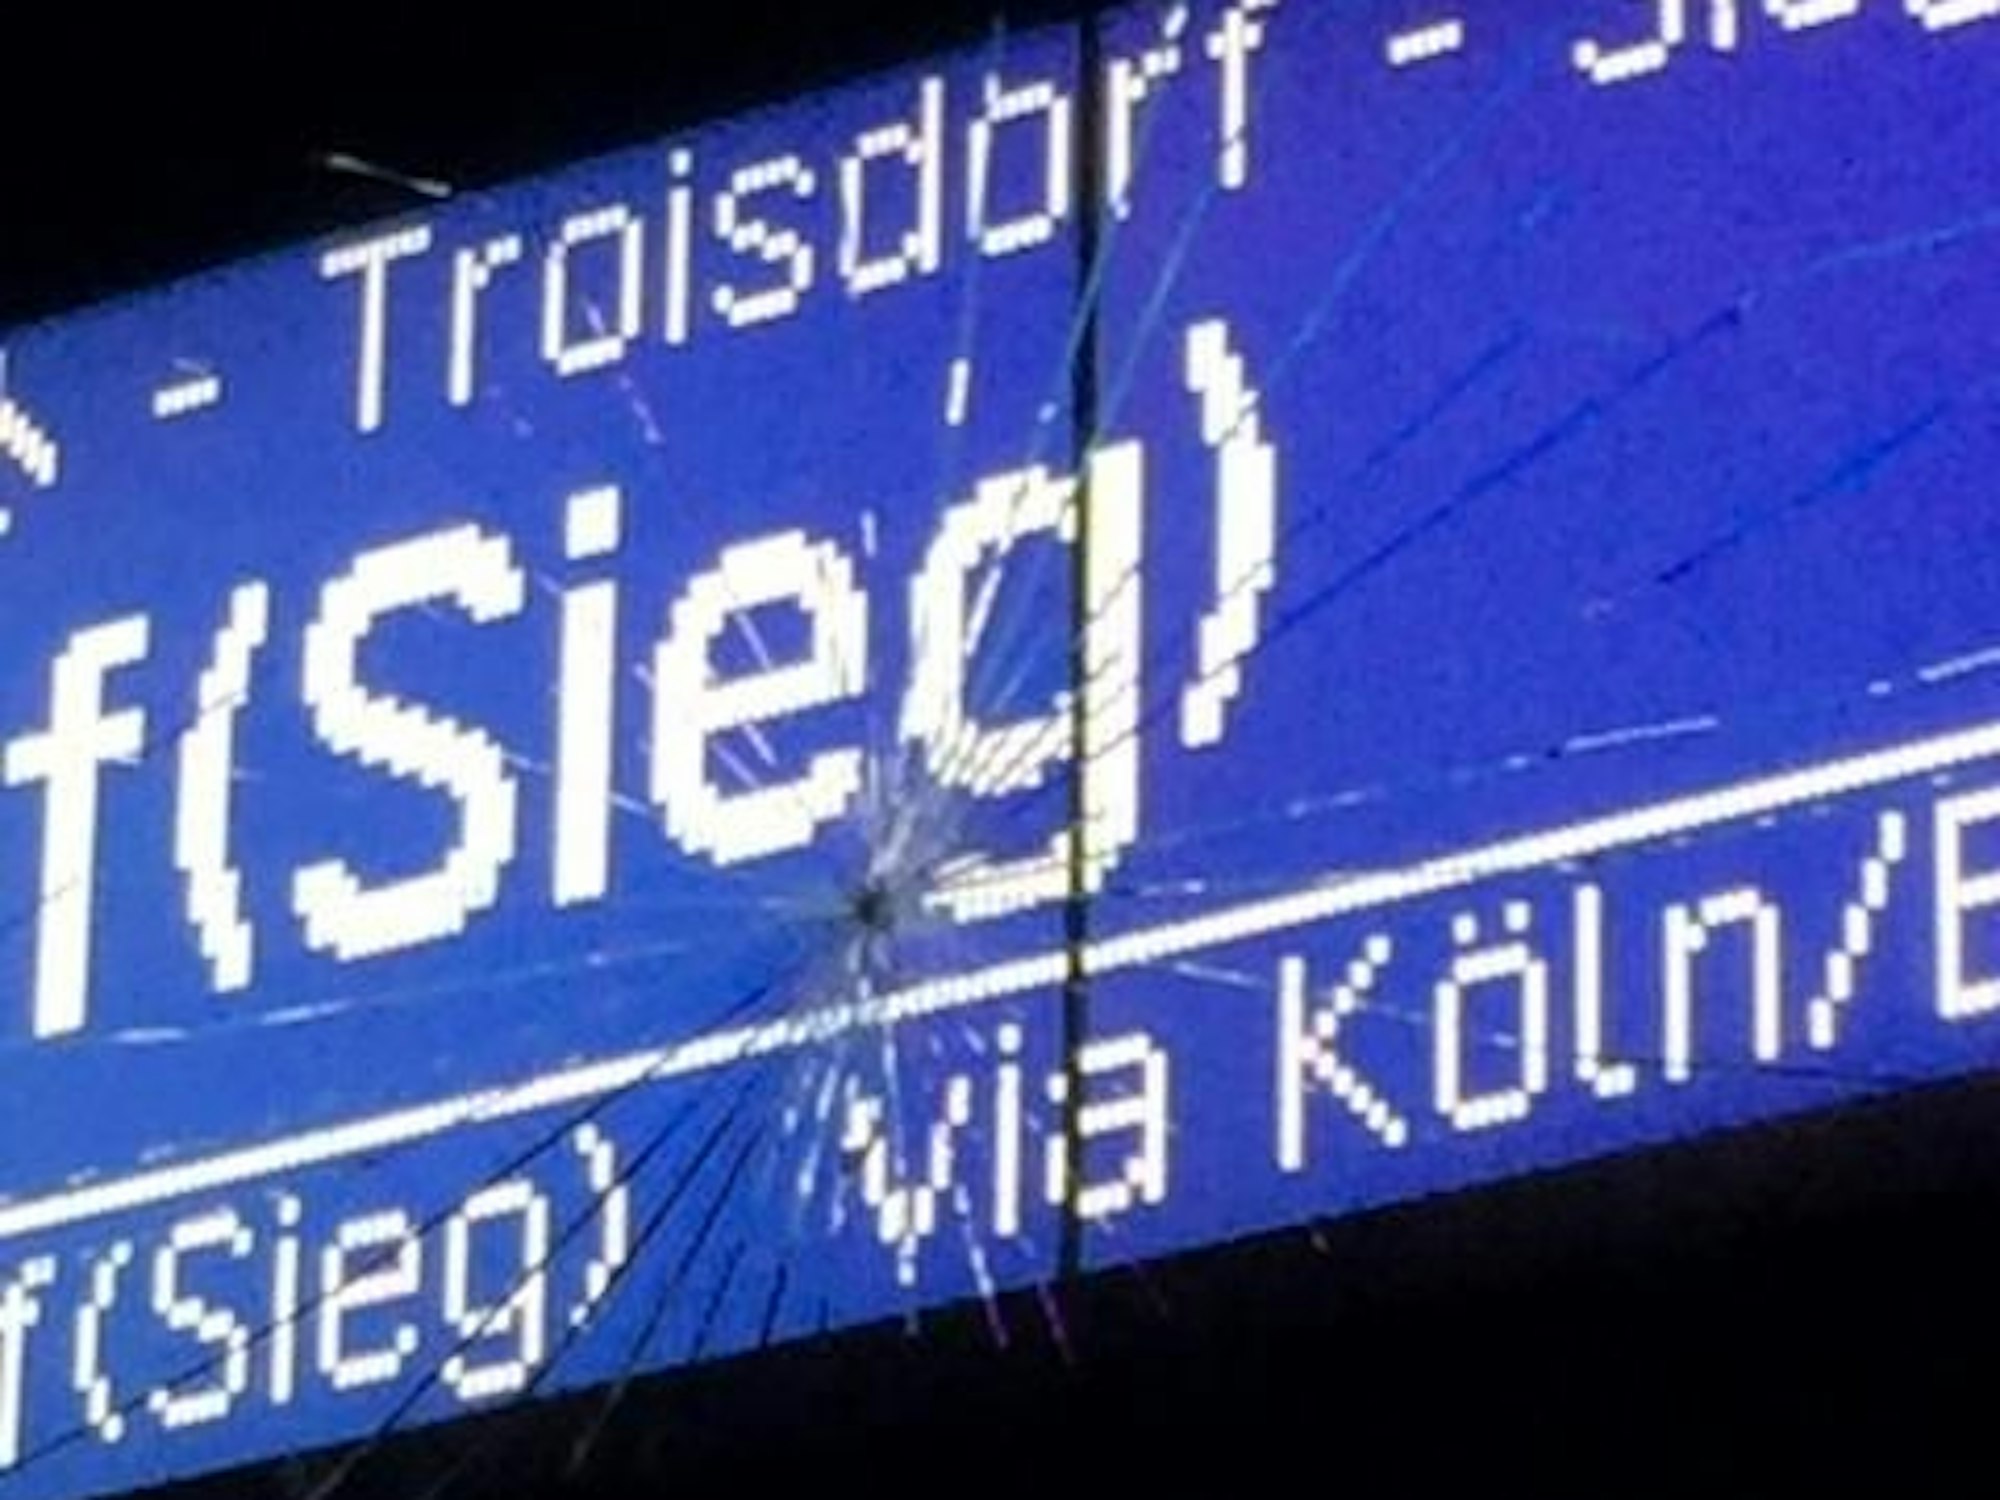 Vandalismus an S-Bahn-Haltestelle Frankfurter Straße in Köln - Foto von der Bundespolizeiinspektion Köln via ots am 25. Oktober 2021 zur Verfügung gestellt.